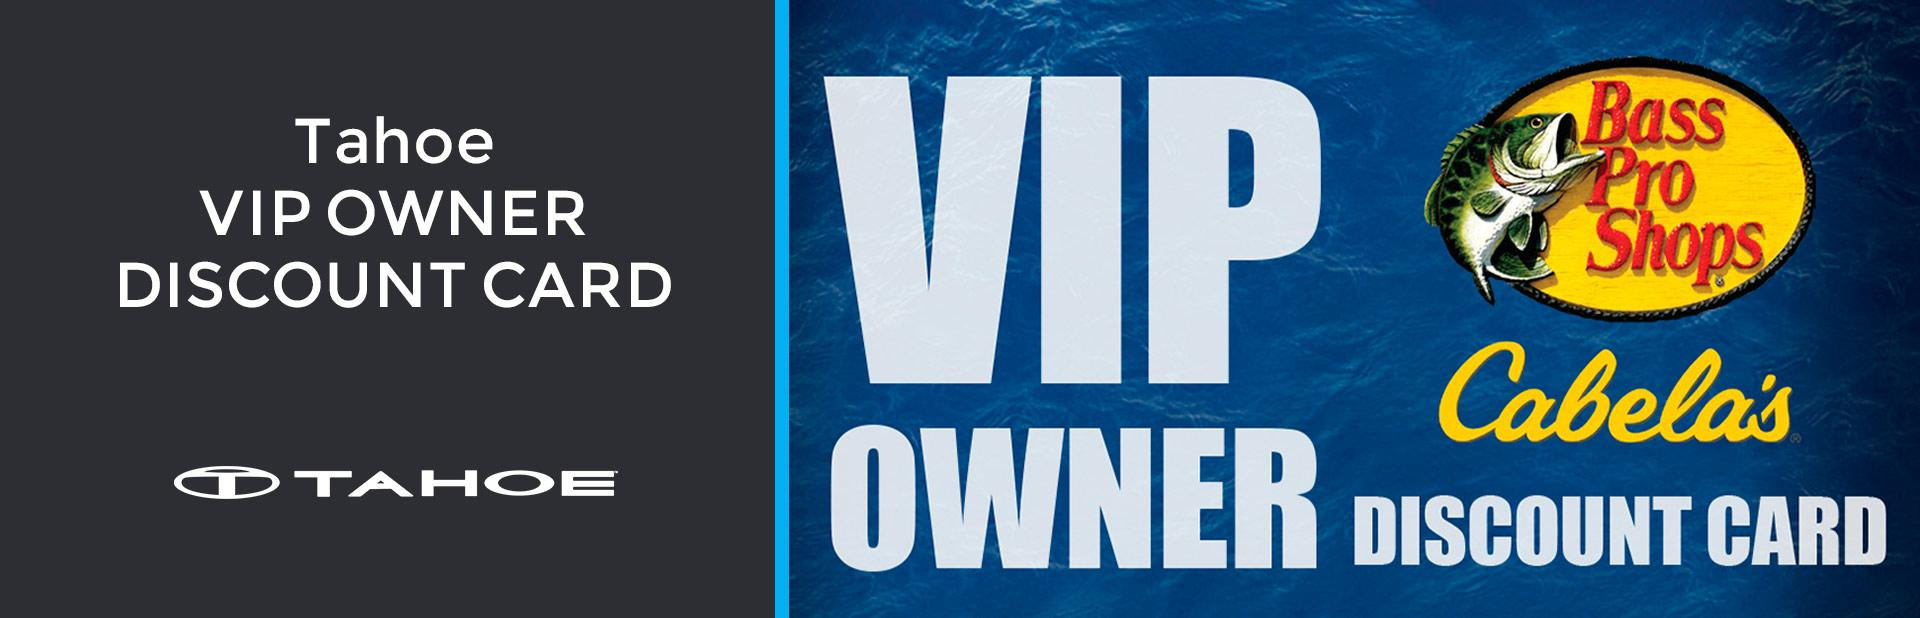 Vip Owner Discount Card Tahoe